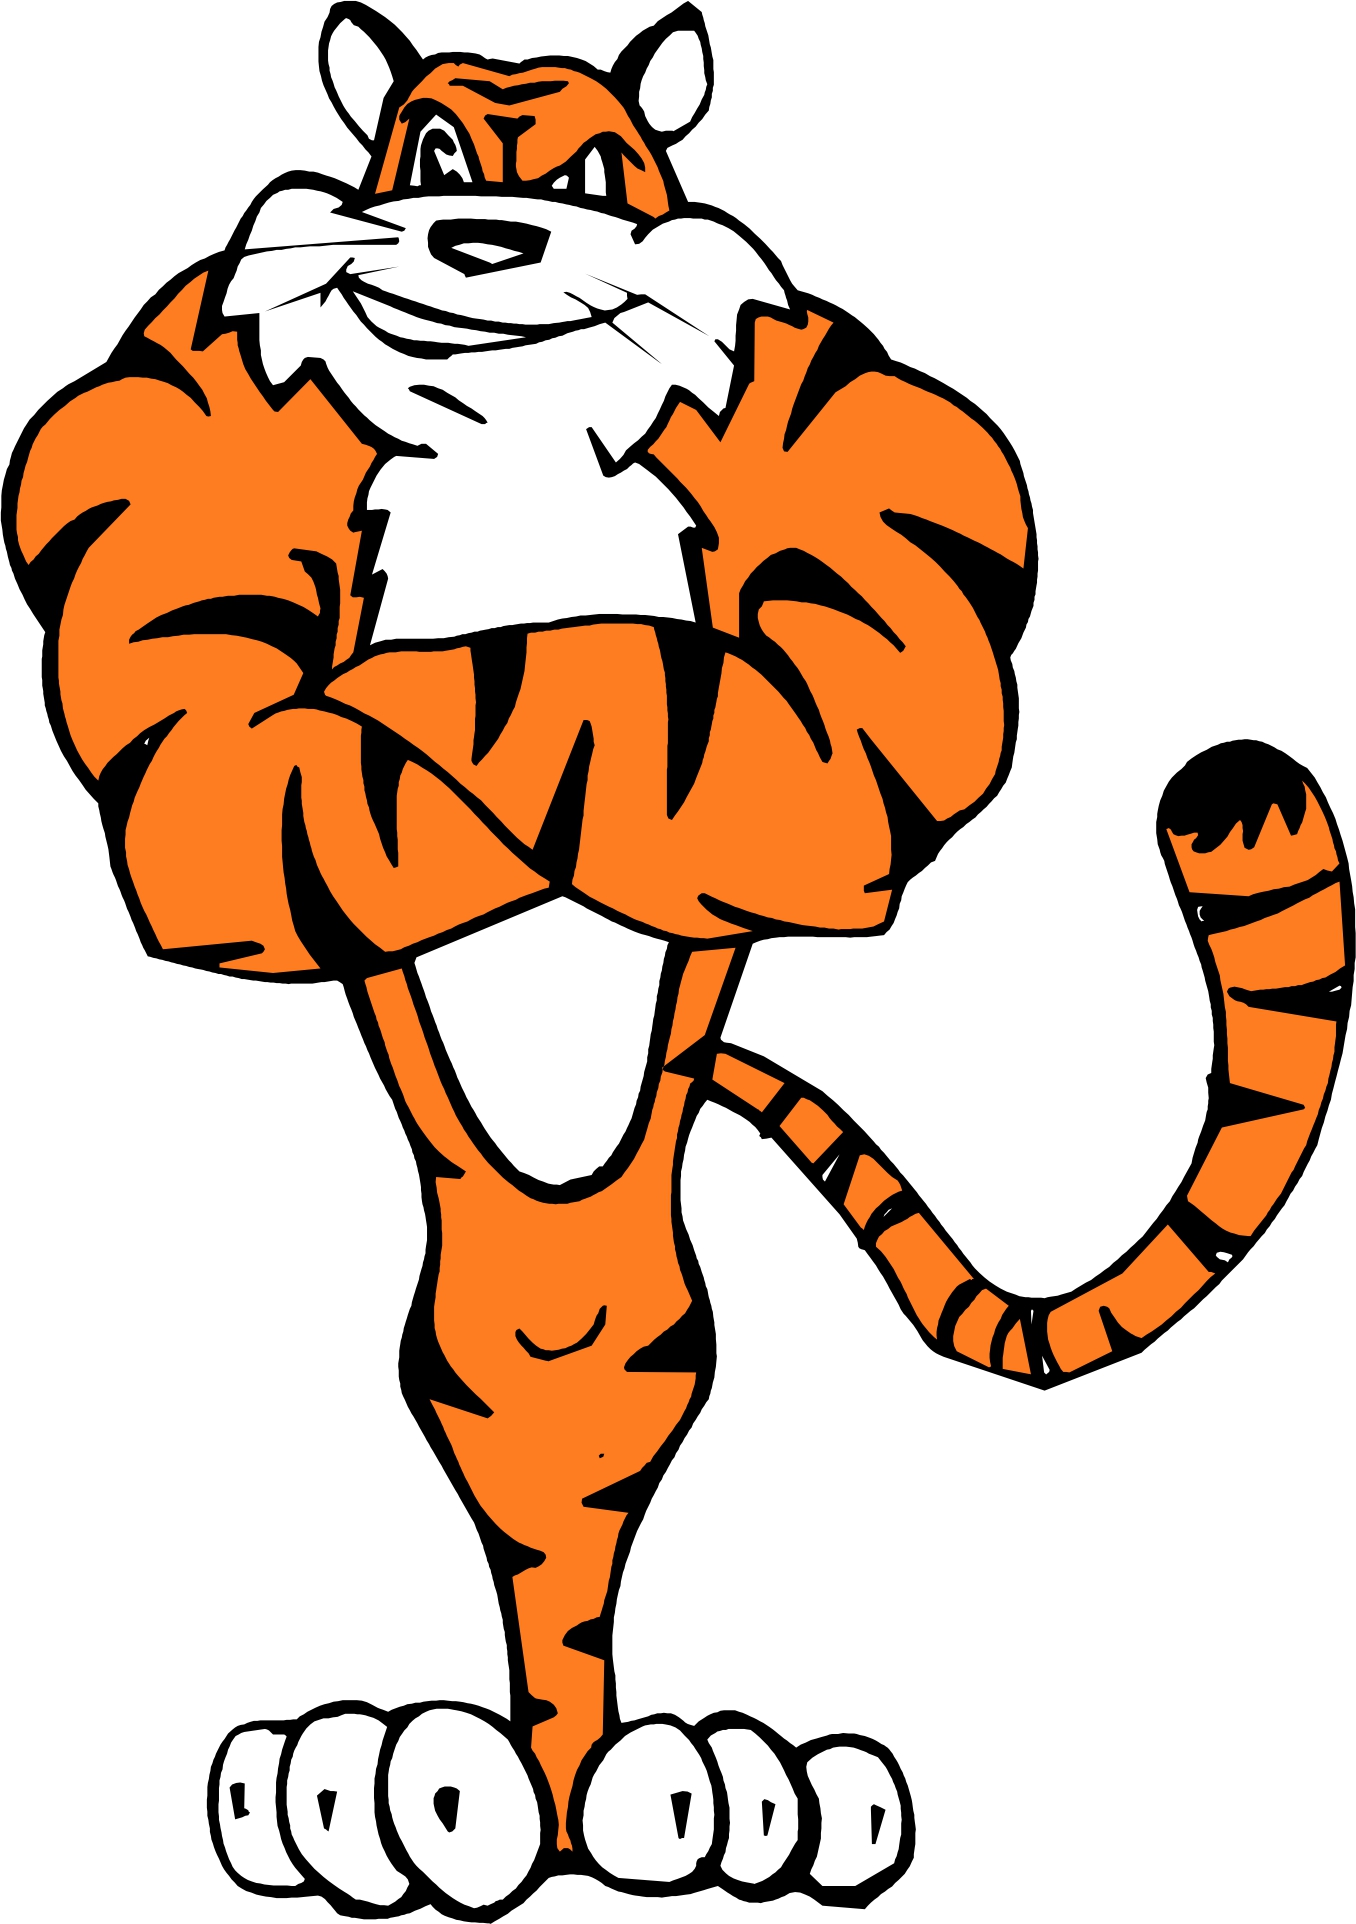 Cartoon Tiger